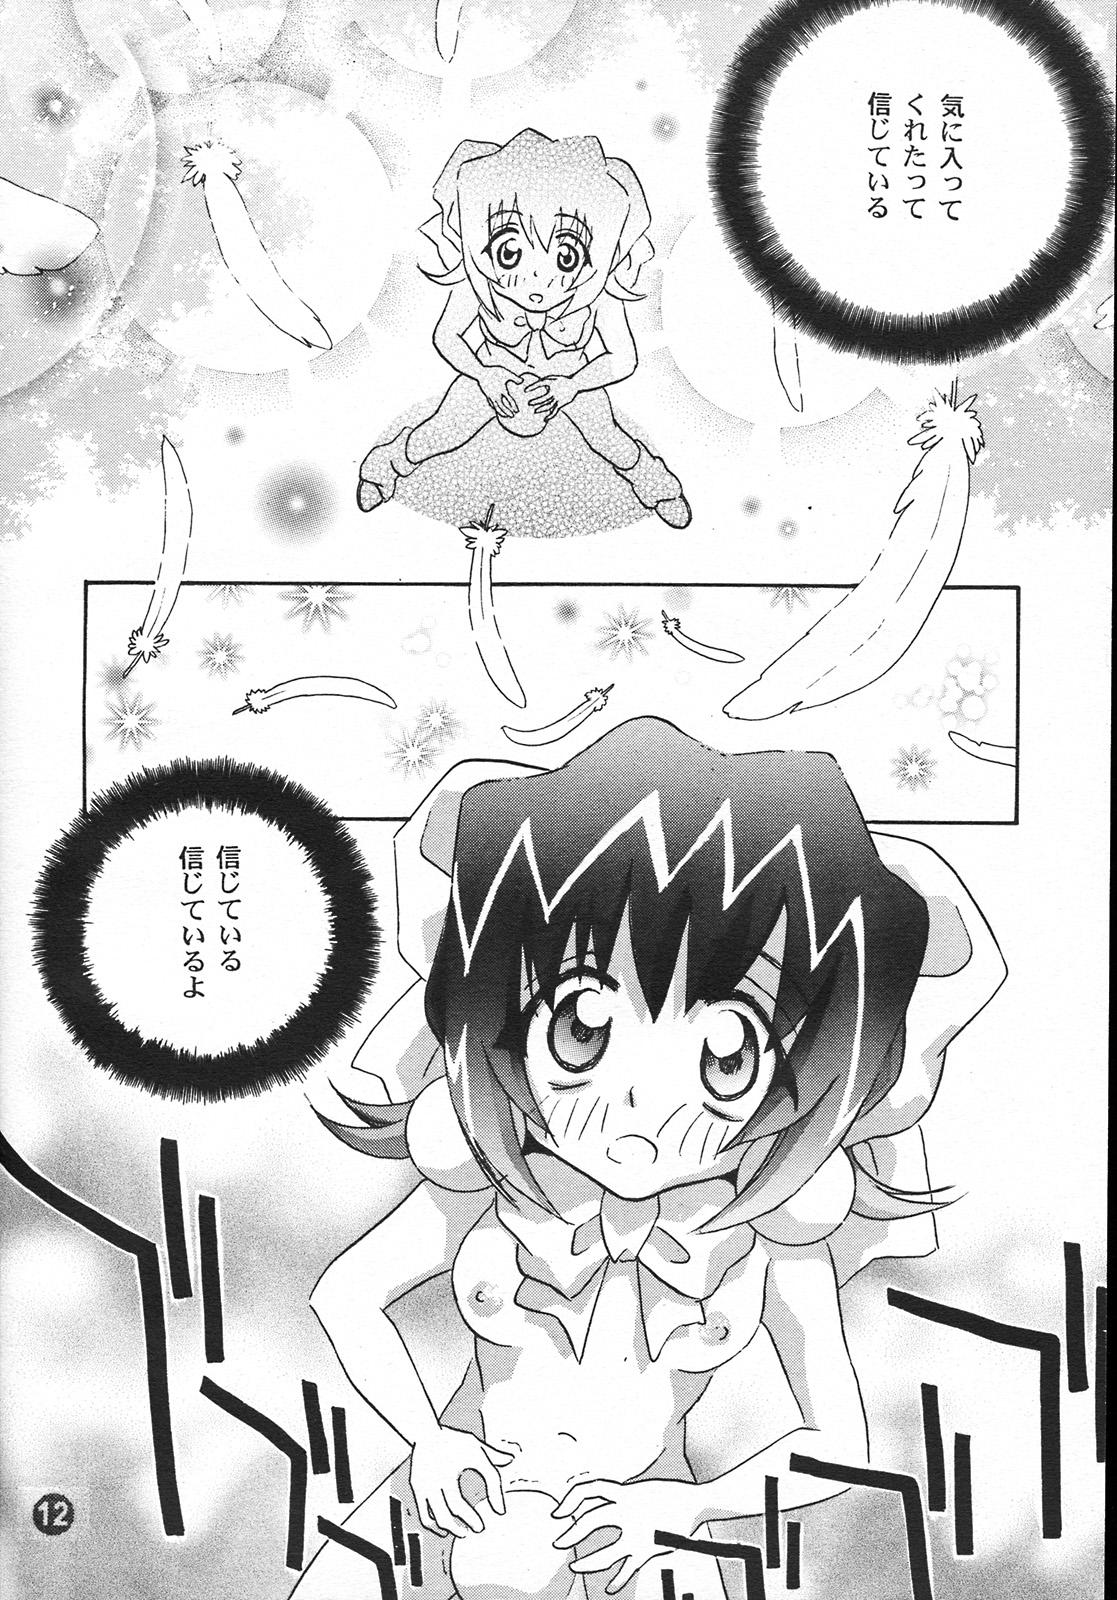 Punish PATA PATA PATAPi ! - Akihabara dennou gumi Work - Page 11